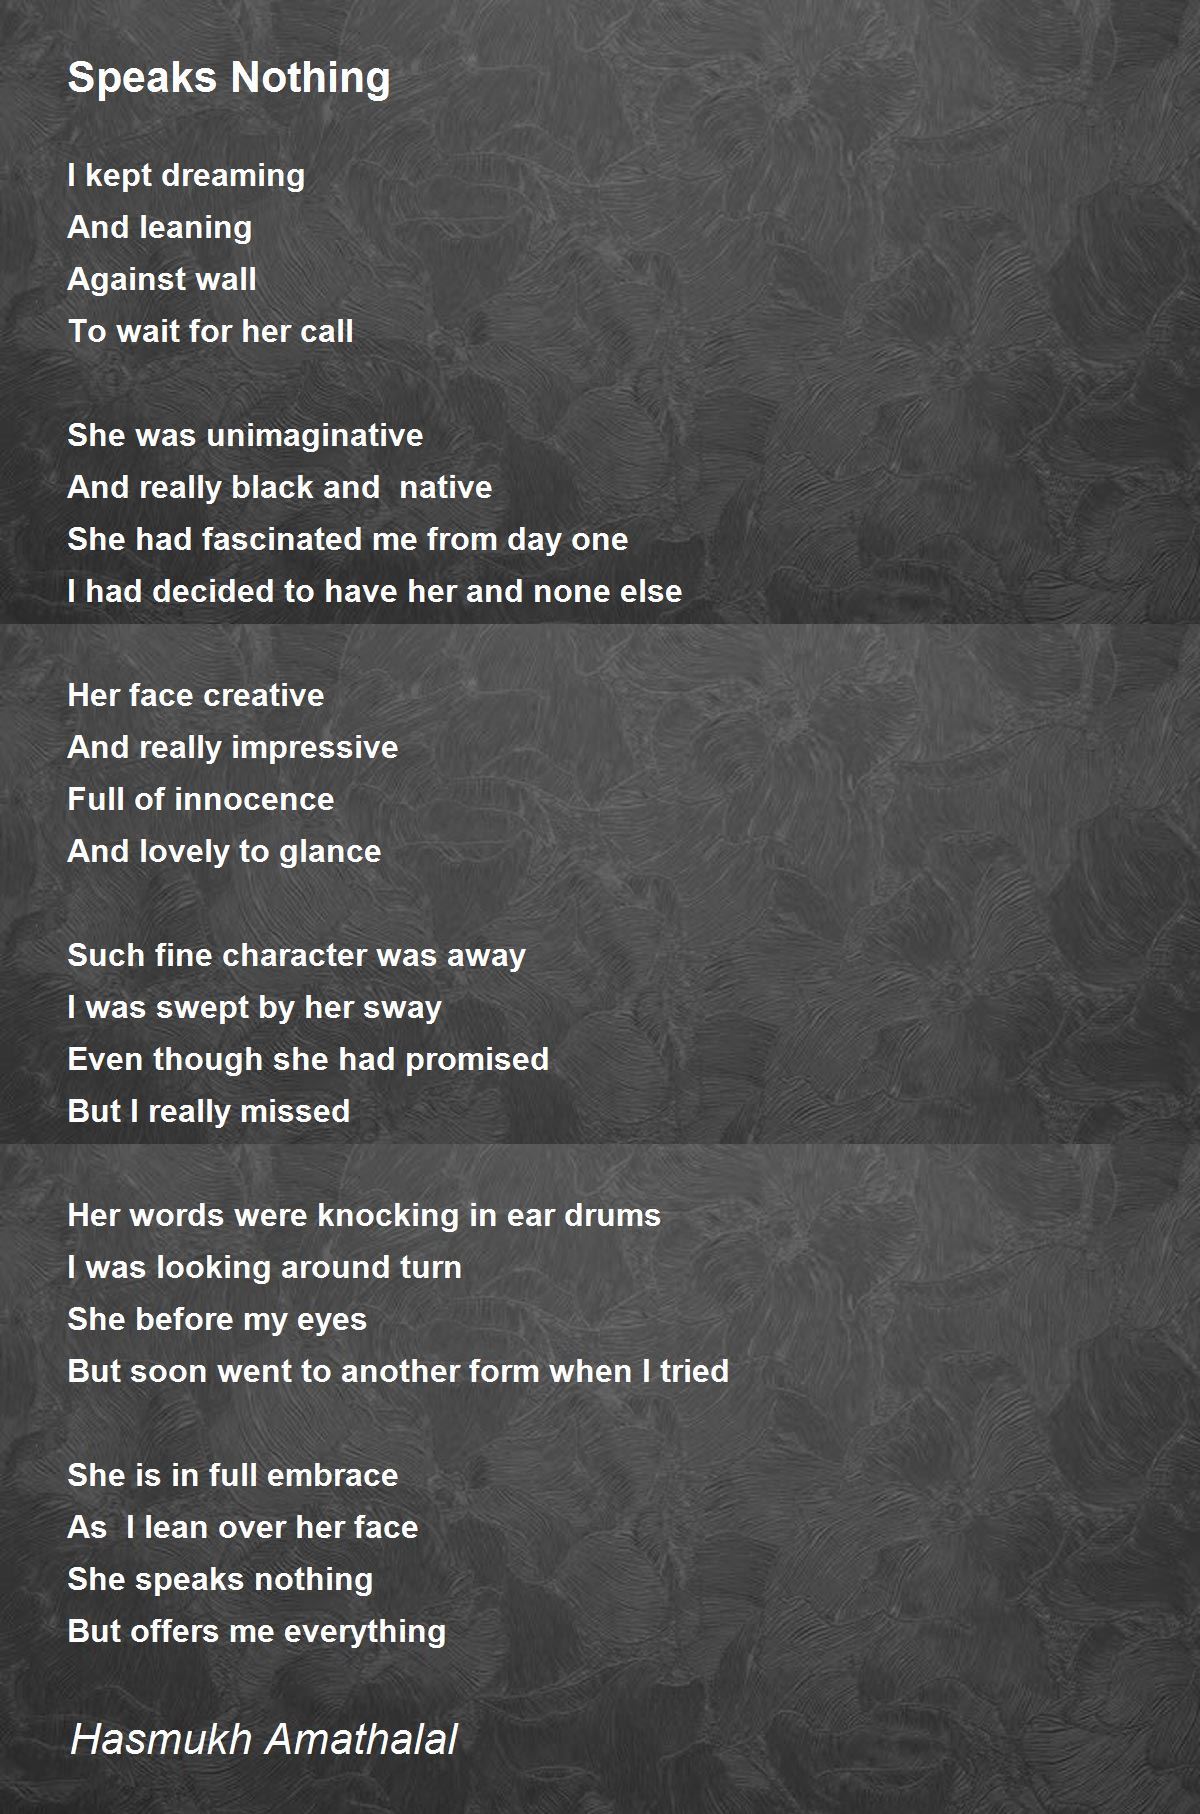 Speaks Nothing - Speaks Nothing Poem by Mehta Hasmukh Amathaal